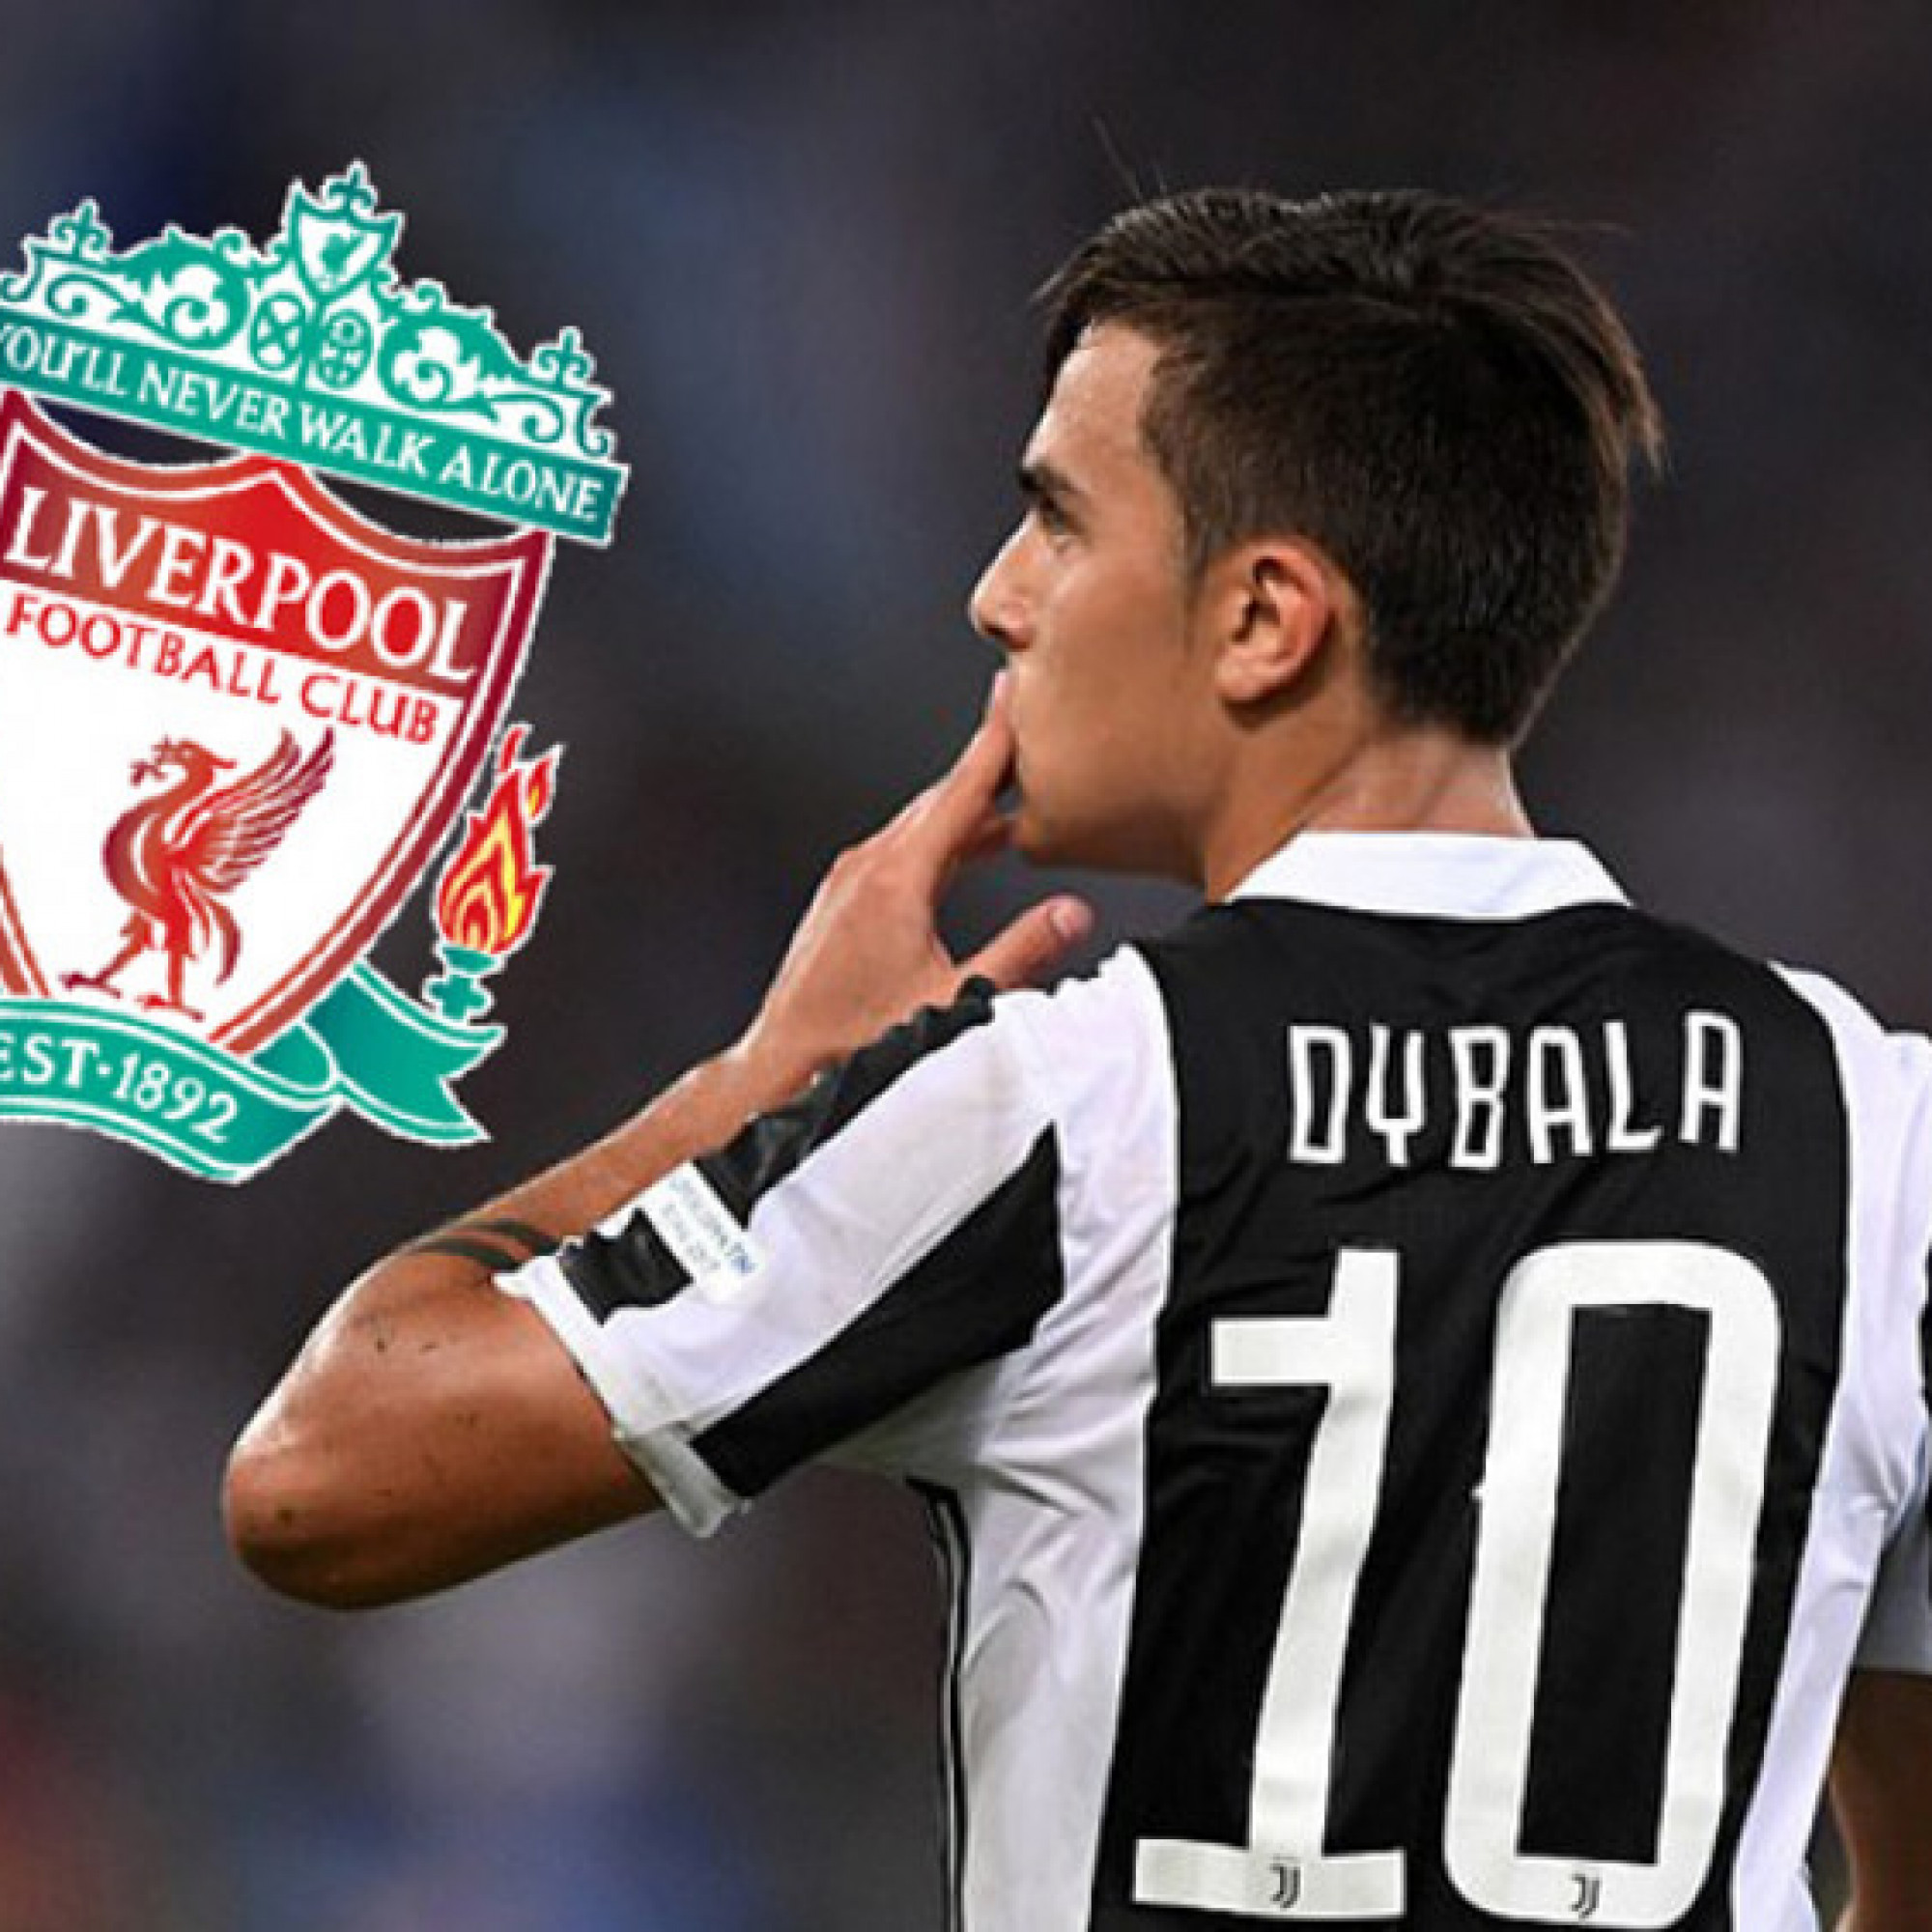  - Choáng Dybala sắp dứt áo Juventus đòi gia nhập Liverpool, liệu có thay Salah?